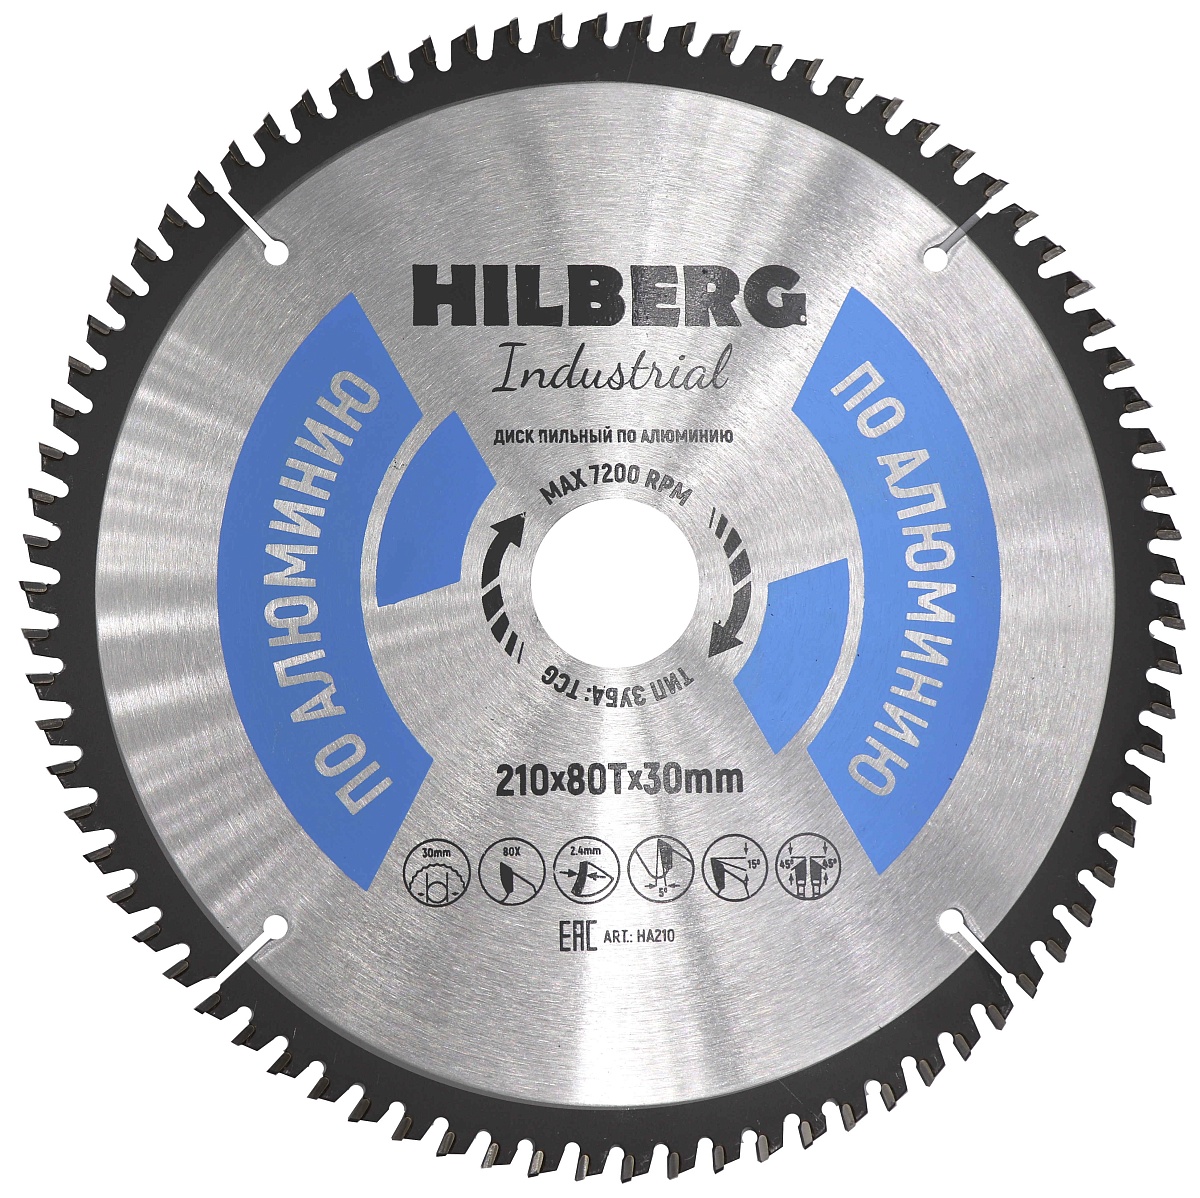 Hilberg пильный серия Industrial Алюминий